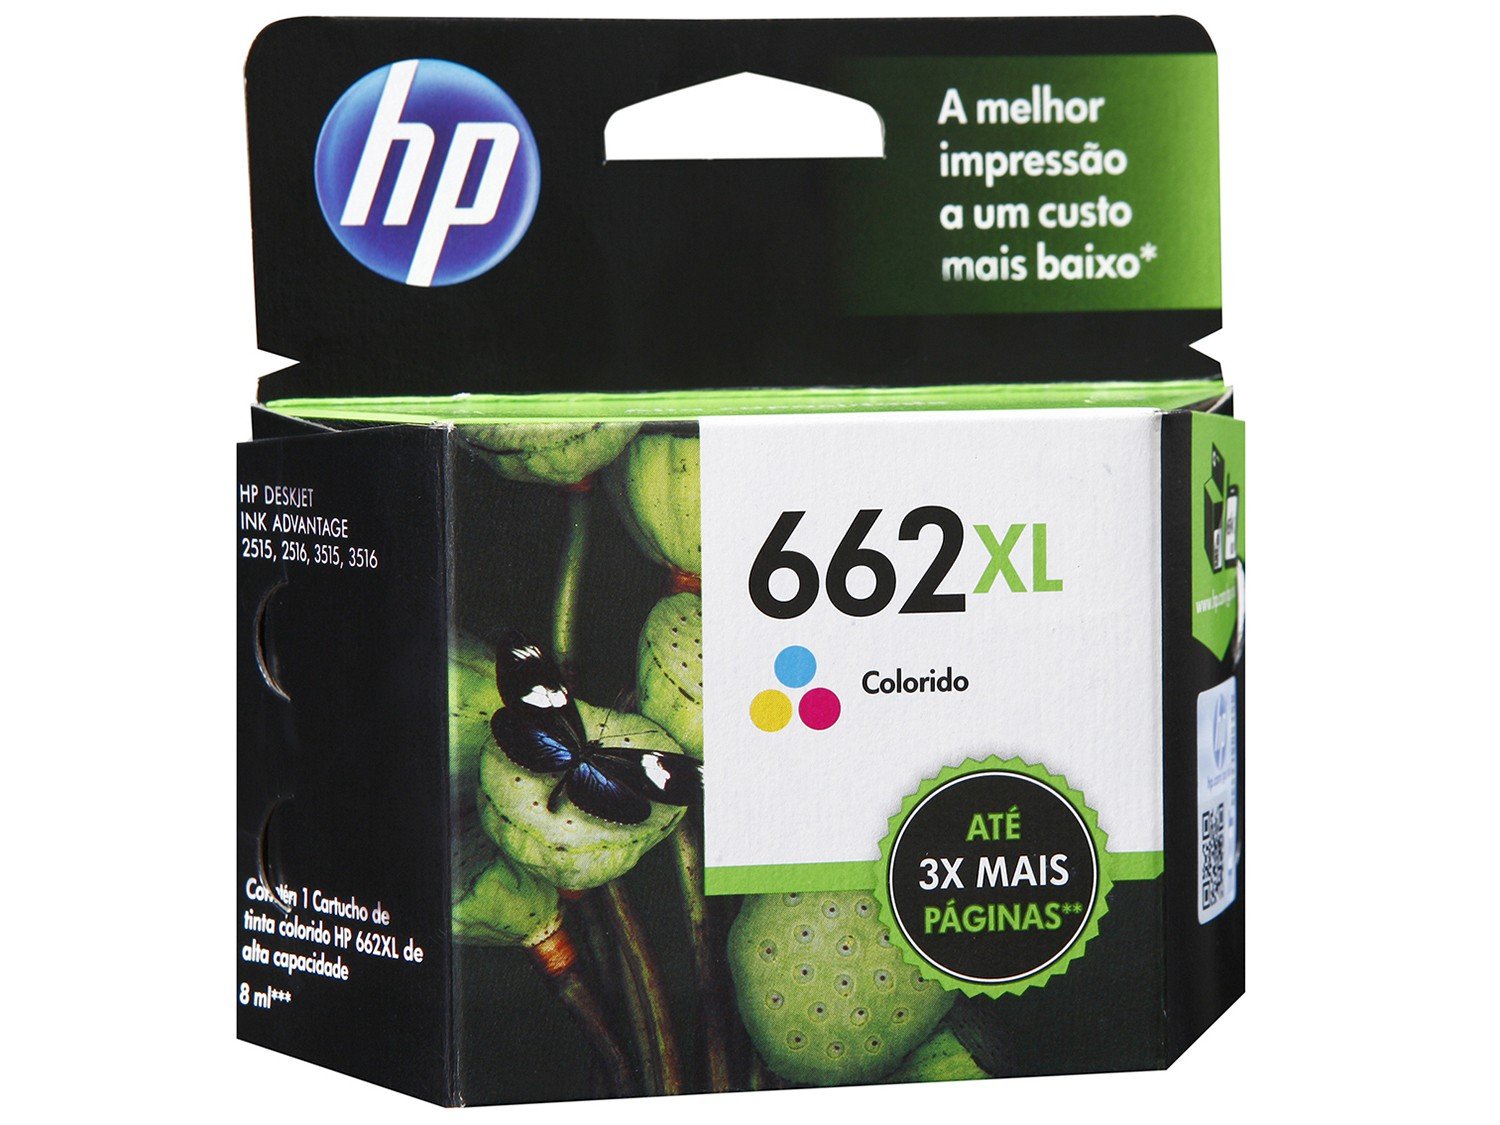 Cartucho de Tinta HP 662XL Colorido - Original - 0